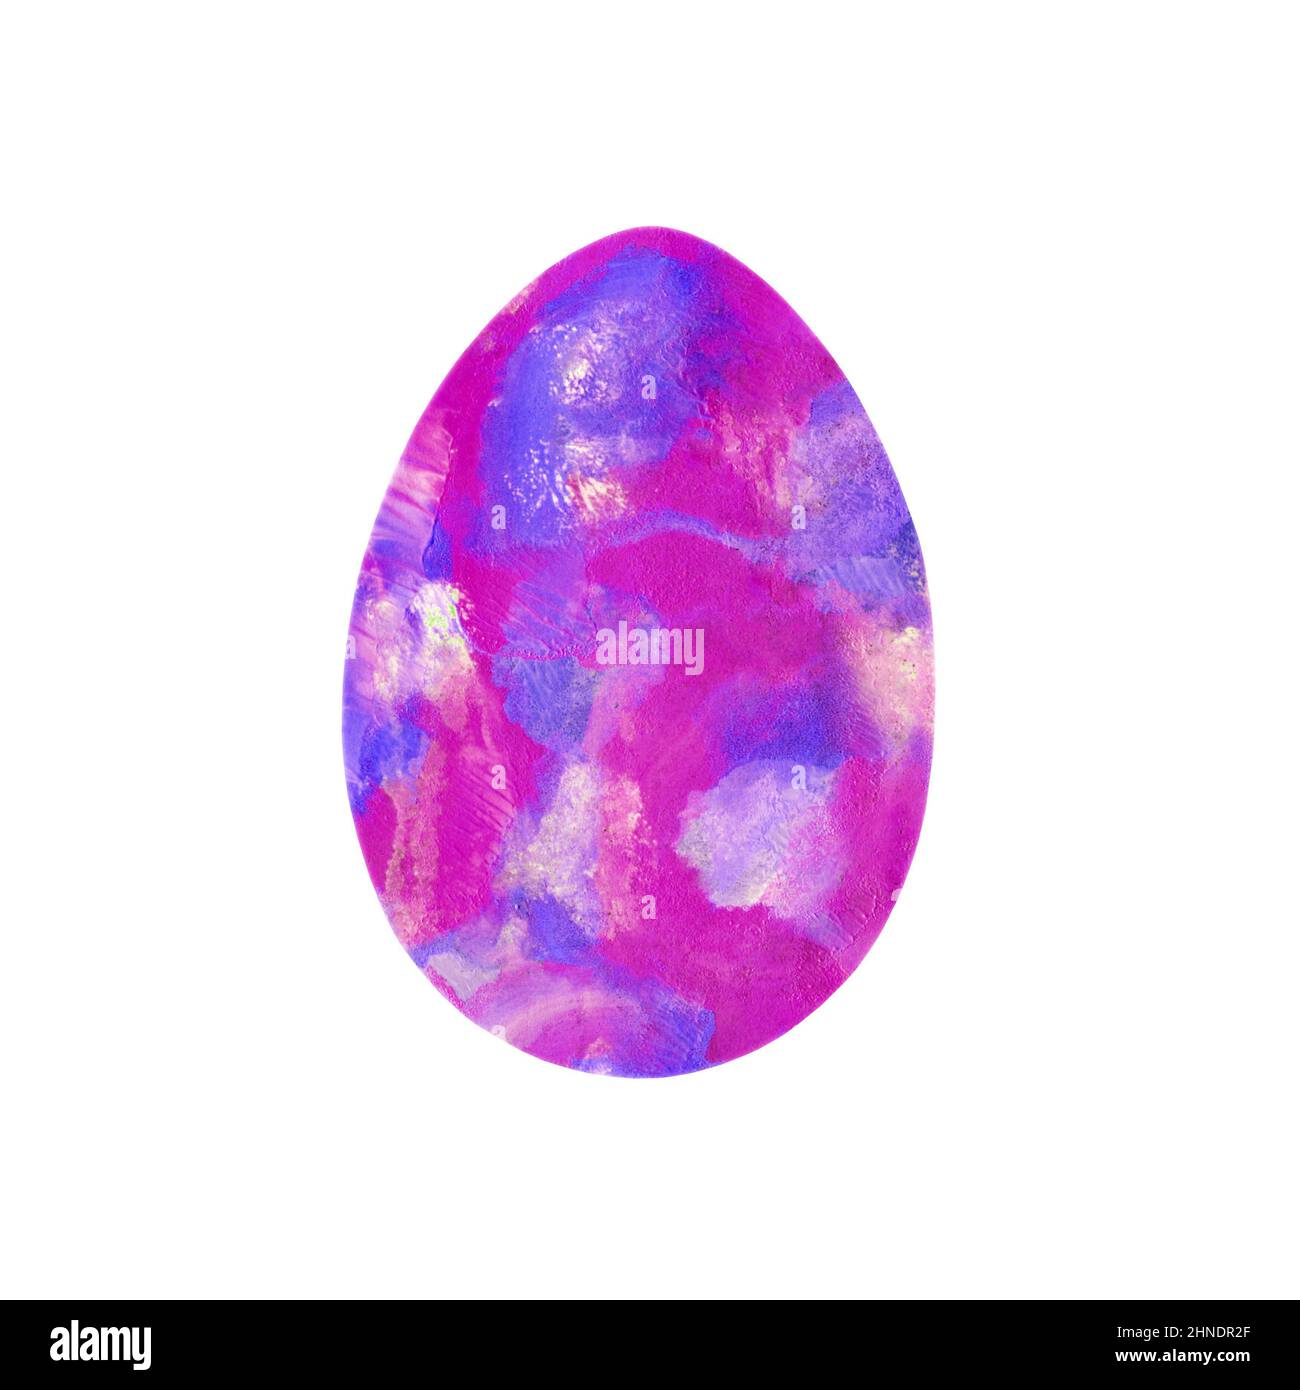 Huevo de Pascua - manchas texturizadas de color rosa-violeta manchas aisladas sobre fondo blanco. Pintura con textura de colores acuarela. Diseño para fondo, cubierta y embalaje, ilustración de Pascua y comida, tarjeta de felicitación. Foto de stock